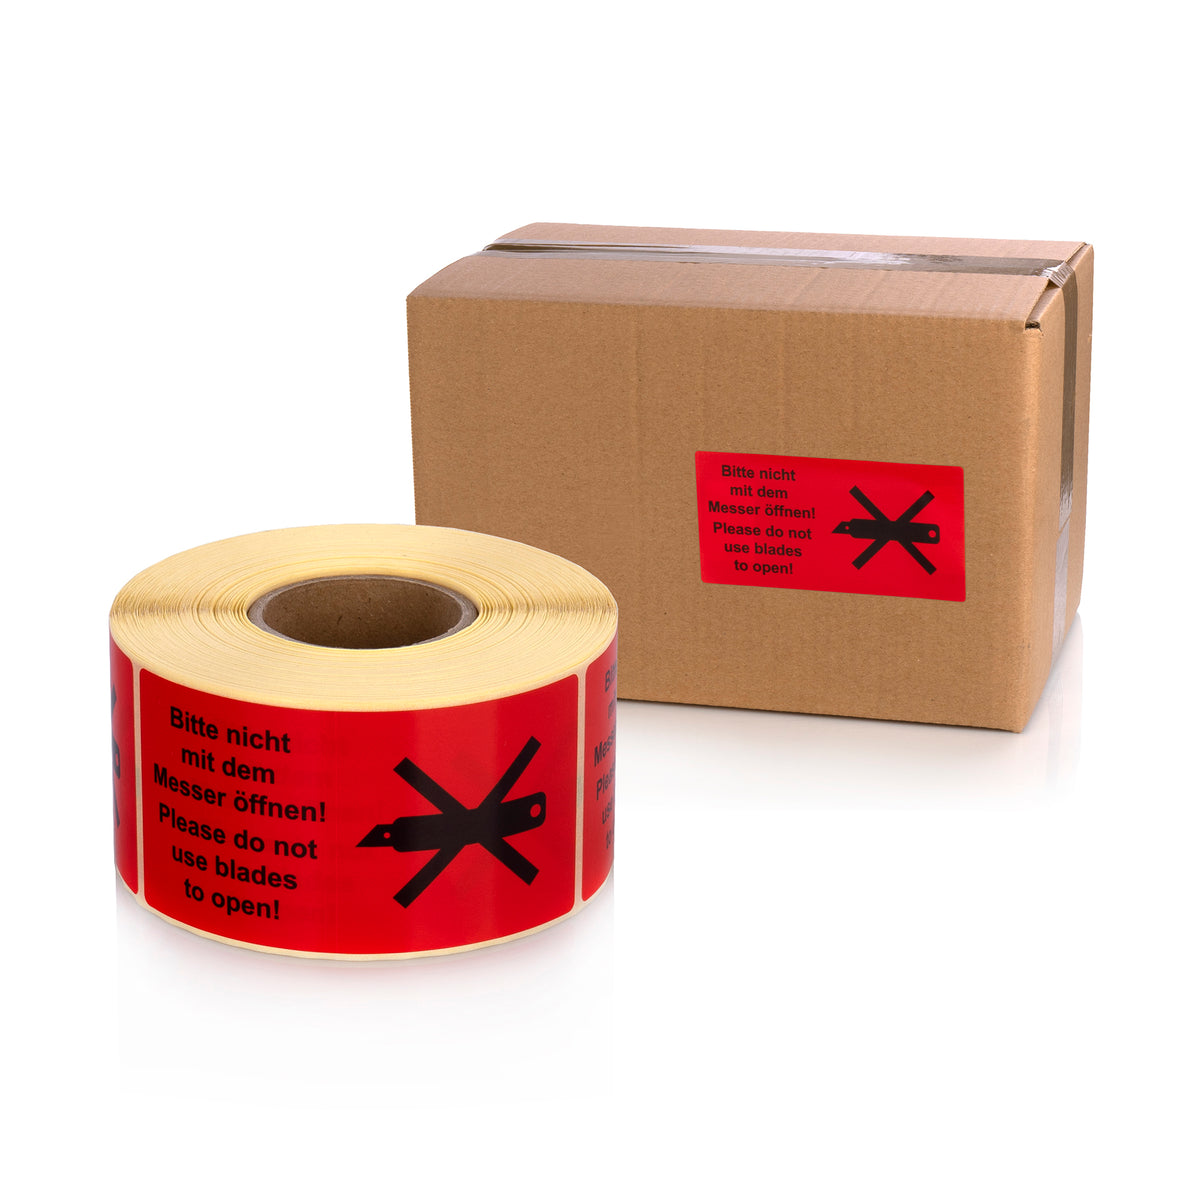 Warning Labels on Roll 100 x 50 mm Bitte nicht mit dem Messer öffnen!- Please do not use blades to open! 500 pcs